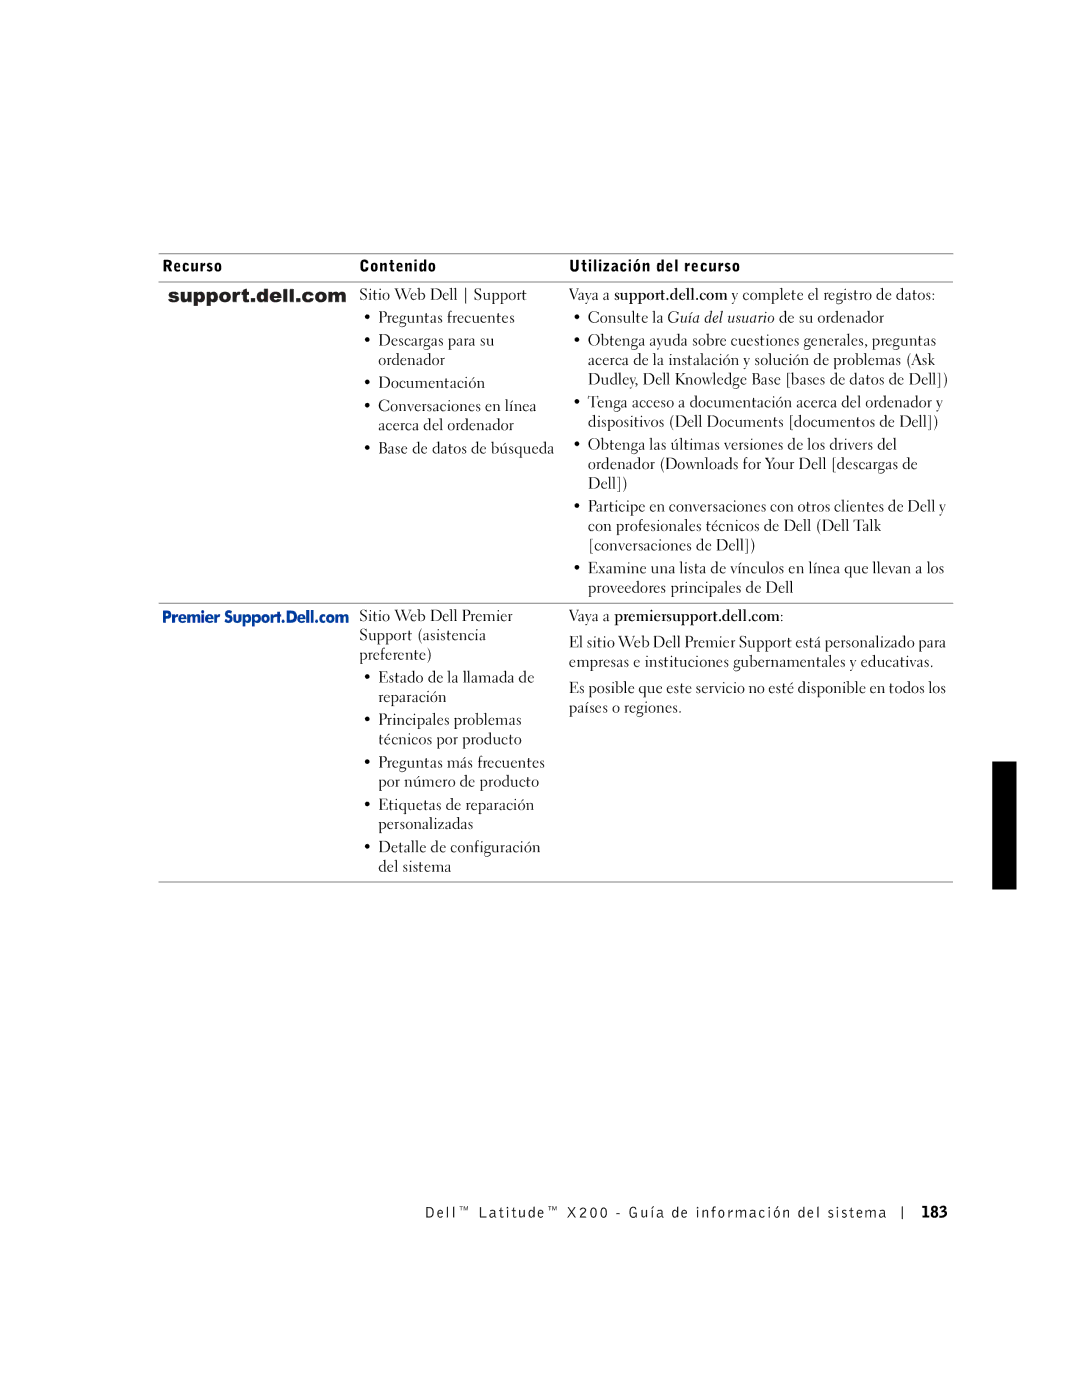 LeapFrog PP03S manual Dell Latitude X200 Guía de información del sistema 183 